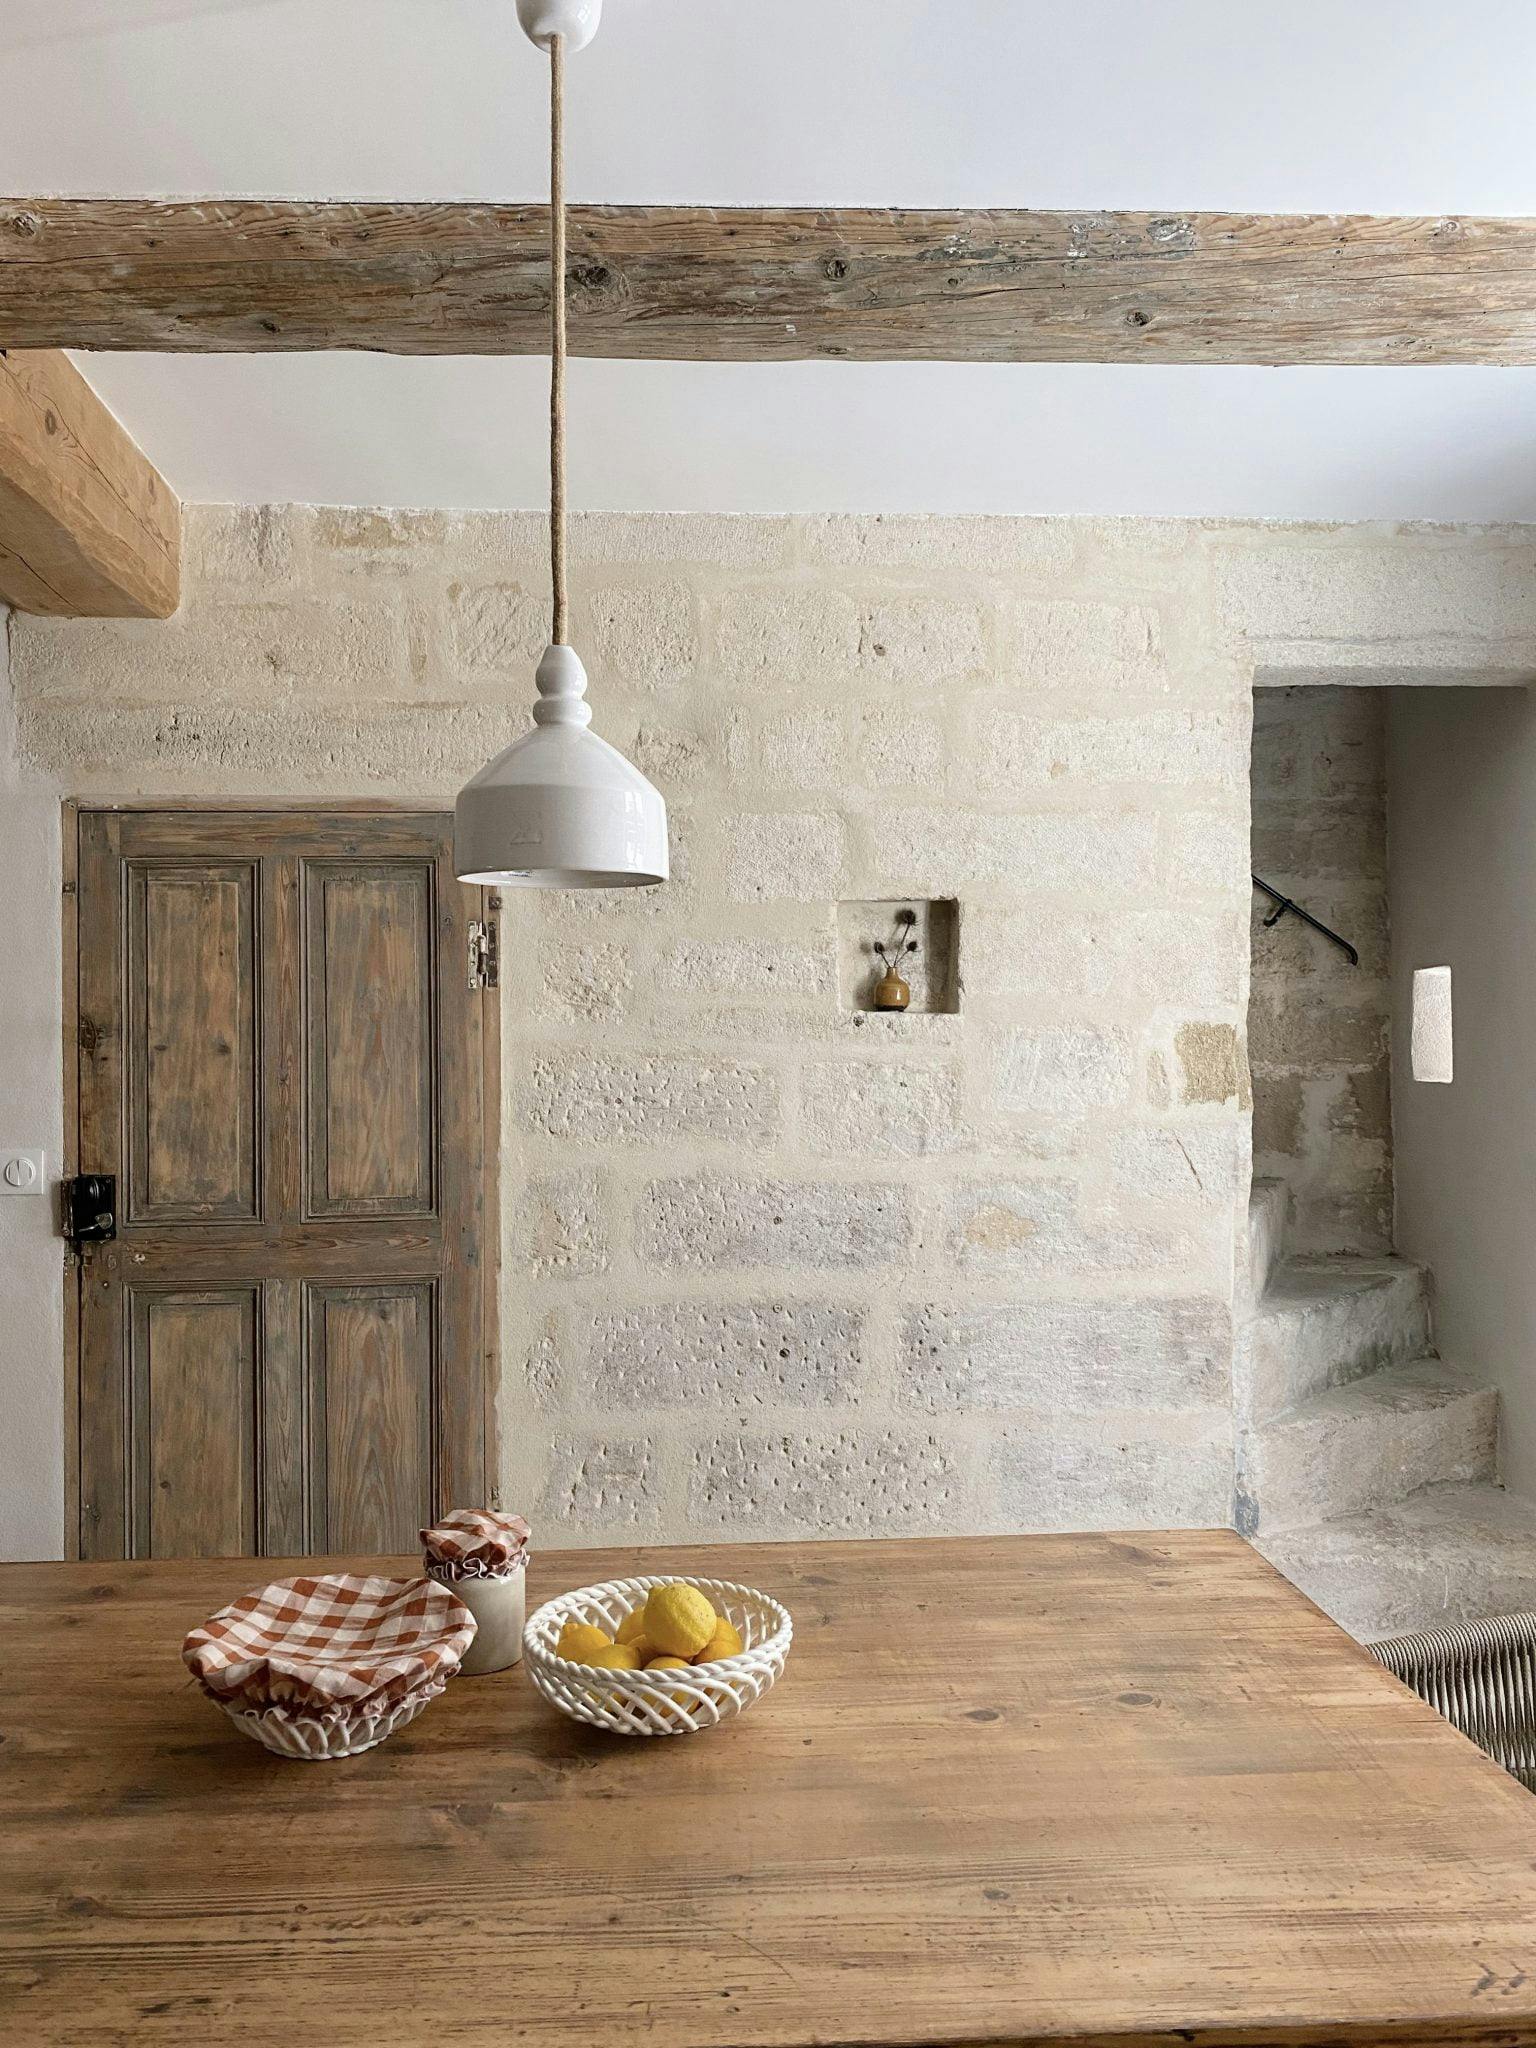 Grande table de ferme dans une pièce lumineuse en pierre et bois